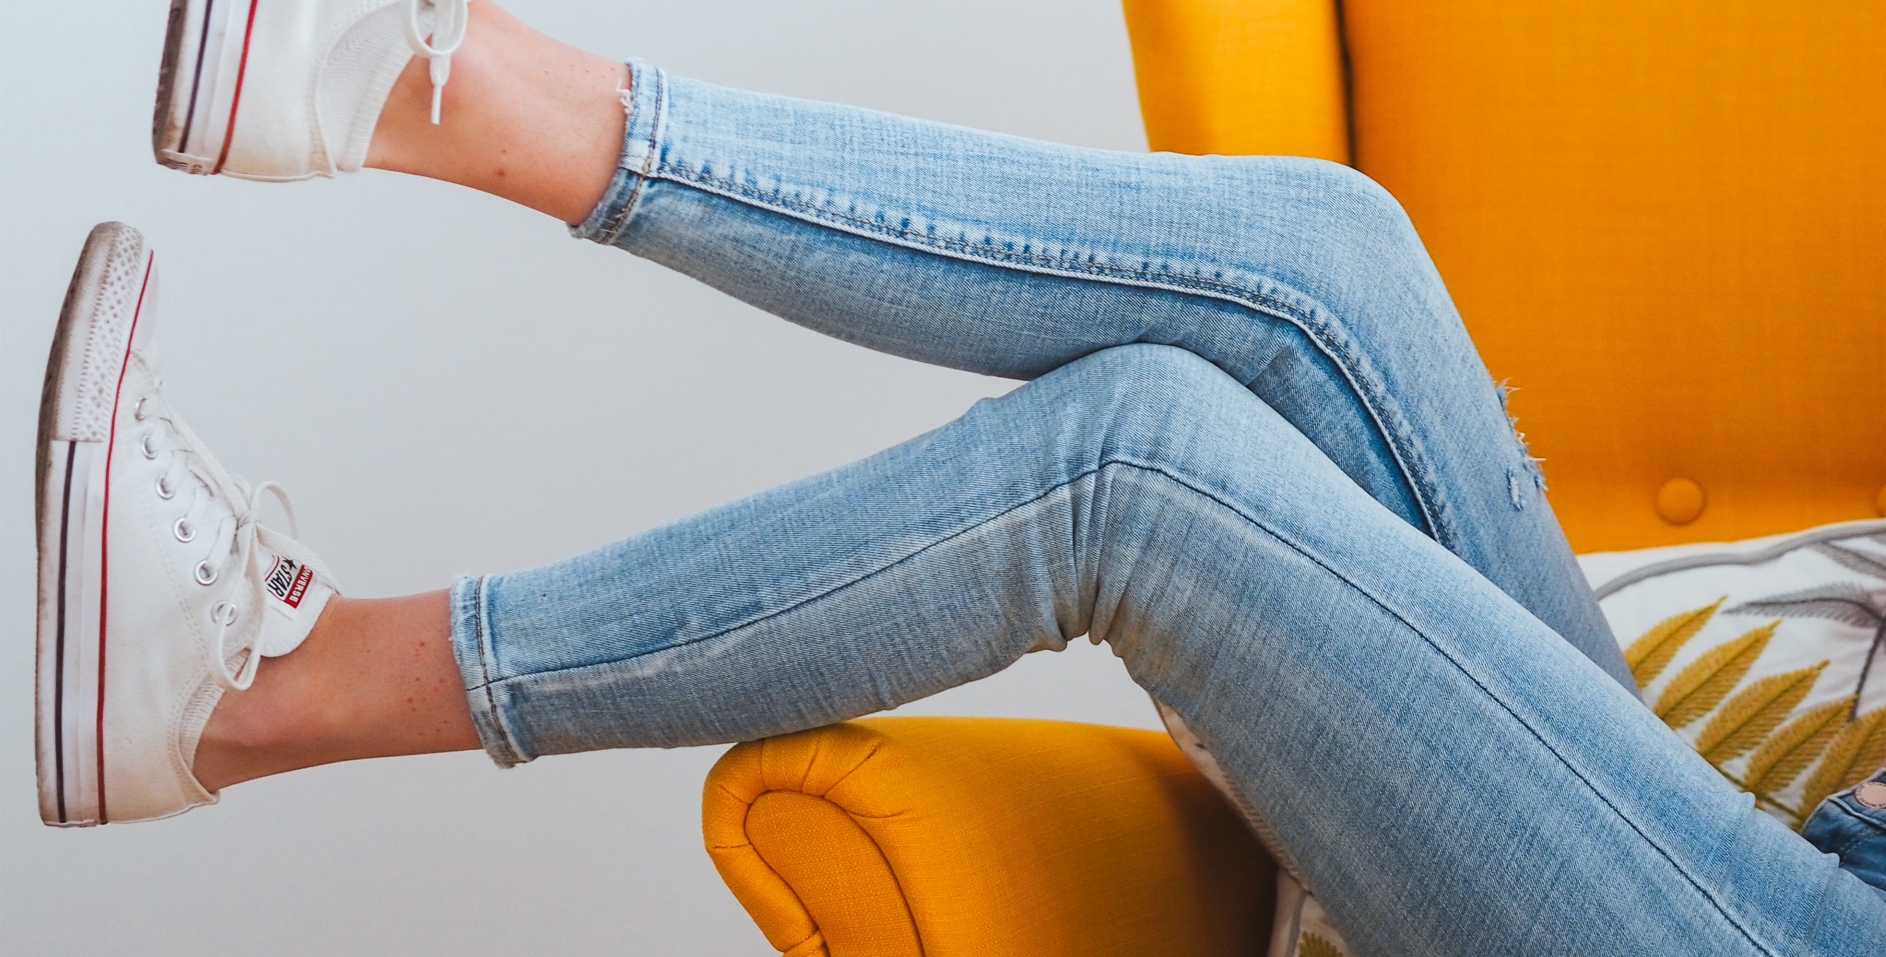 10 idiotensichere Schuhe zu Skinny Jeans